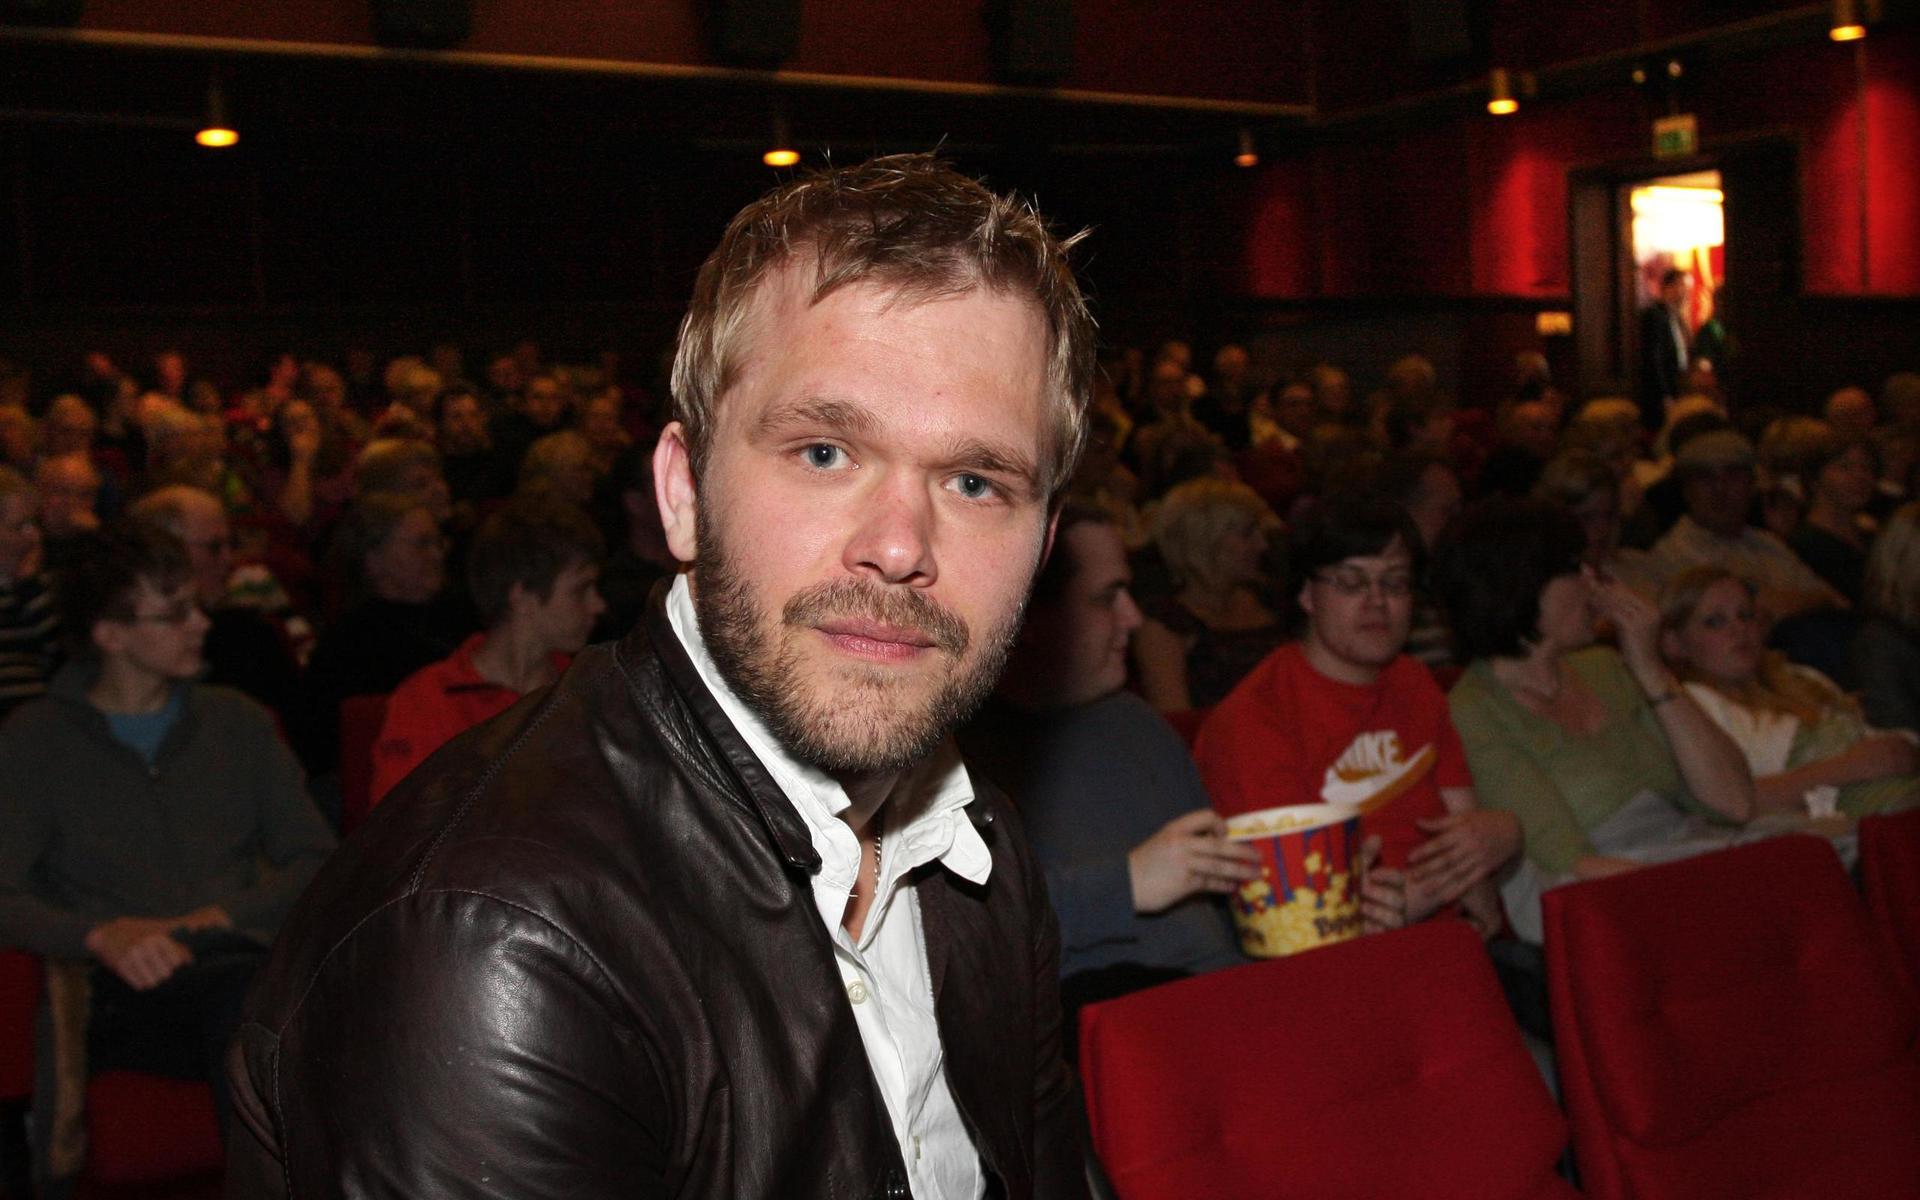 Inför en fullsatt Biograf Maxim-salong fick Joakim Nätterqvist ta emot Laholms filmpris 2008 för sin insats som huvudrollsinnehavare i Arn - Tempelriddaren. 